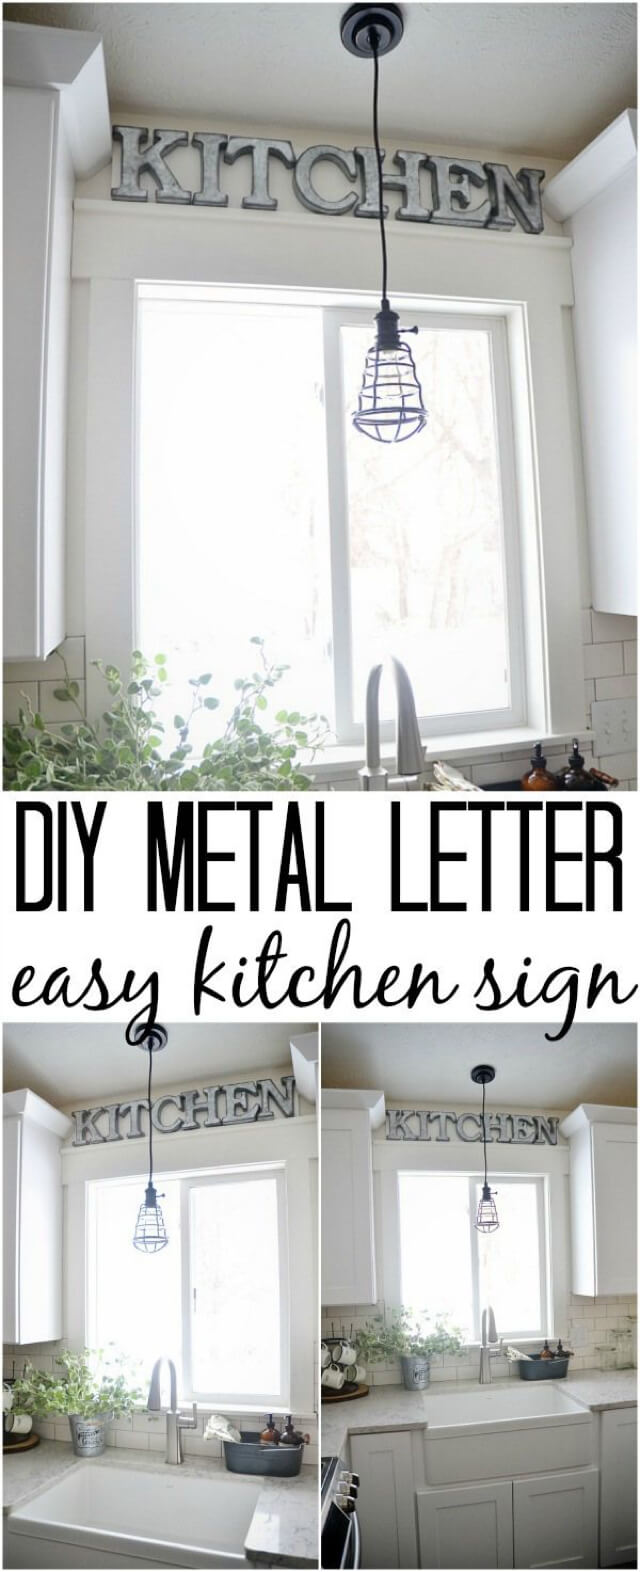 DIY Metal Letter Kitchen Sign